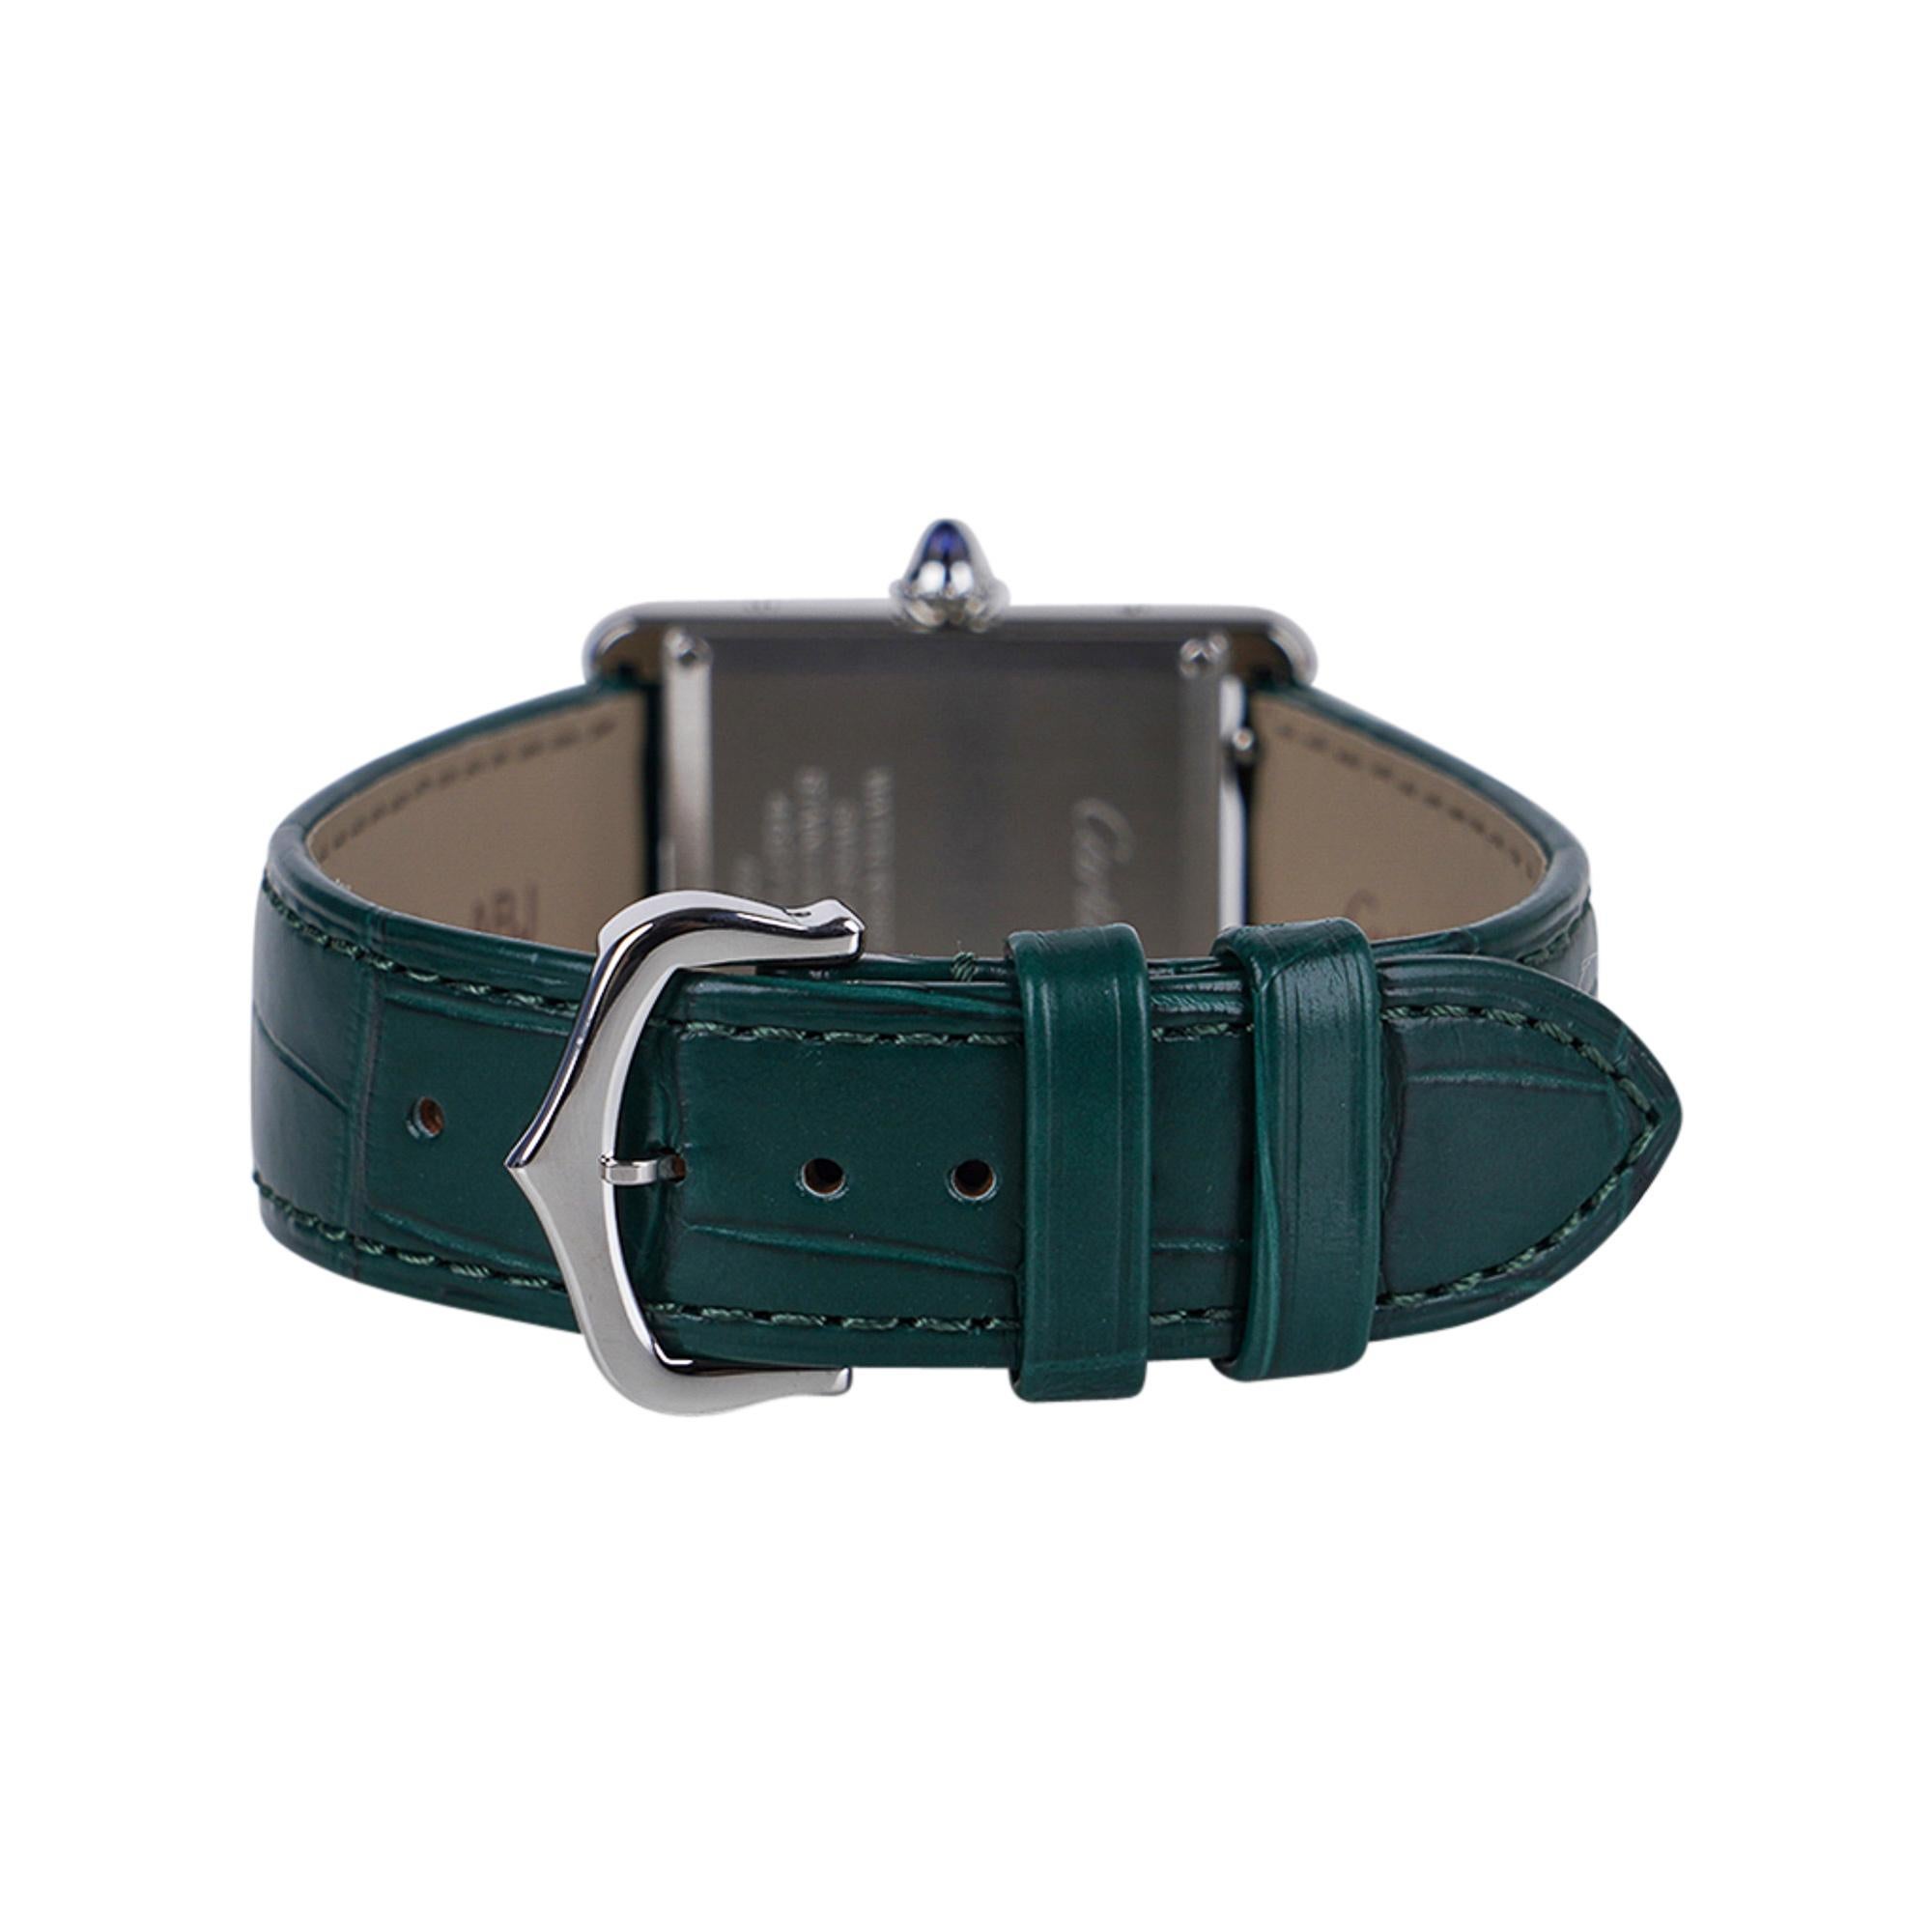 Men's Cartier Tank Must de Cartier Watch Green 2021 Limited Edition New w/ Box